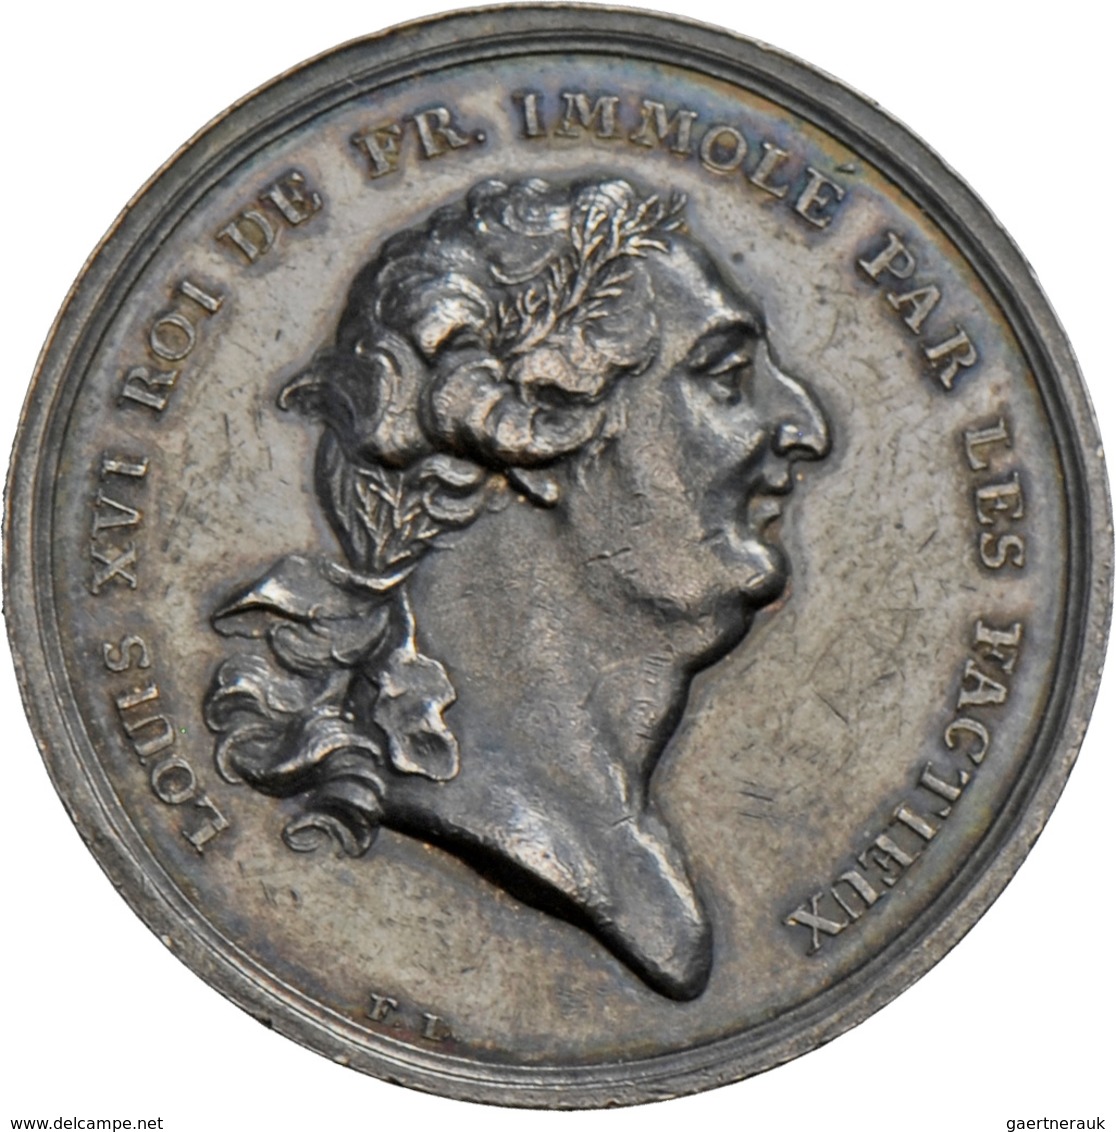 Medaillen Alle Welt: Frankreich, Ludwig XVI. 1774-1792: Silbermedaille 1793 Von F. Loos Auf Die Hinr - Non Classificati